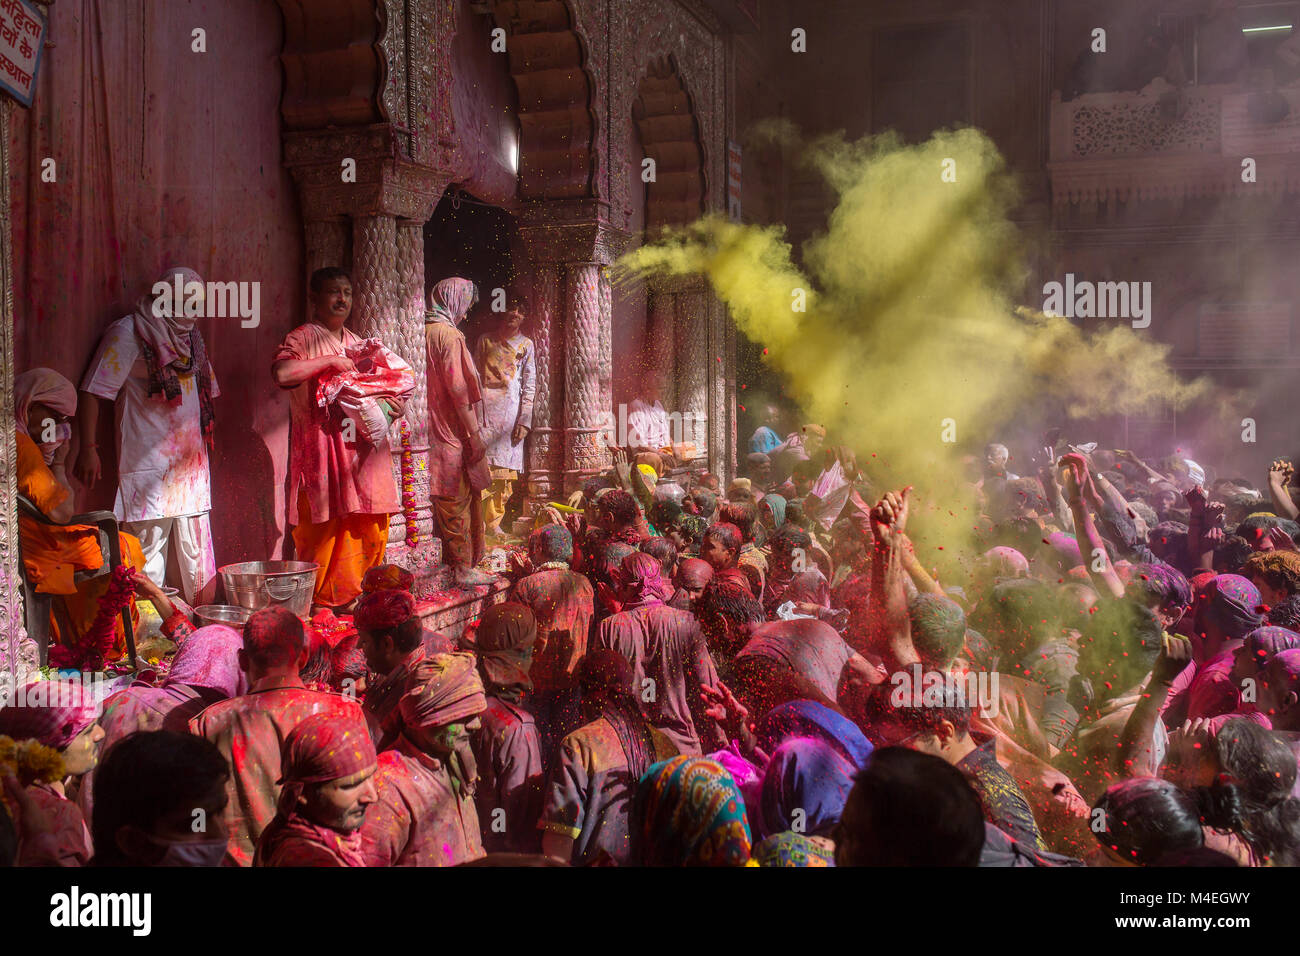 Vrindavan, India - March 22, 2016: Holi celebration in the Hindu Banke Bihare temple in Vrindavan, Uttar Pradesh, India. Stock Photo